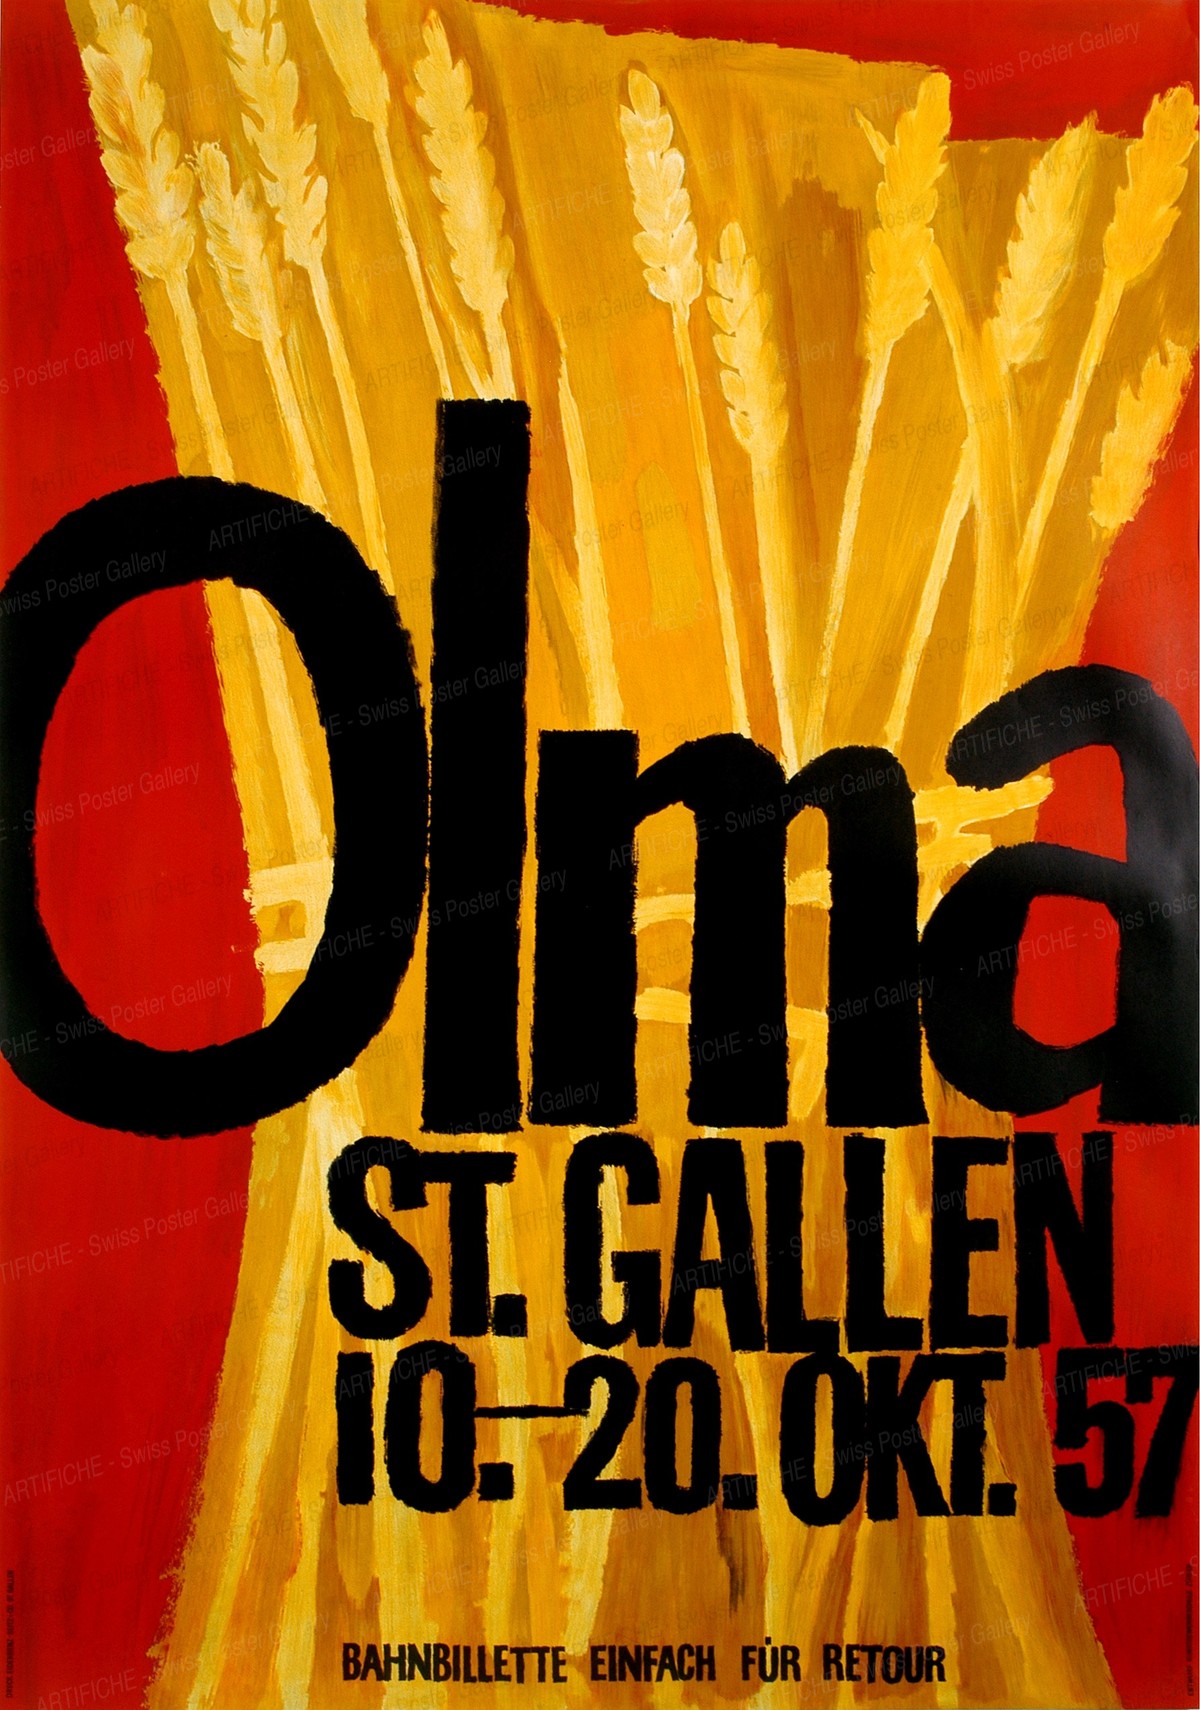 Olma St. Gallen 1957, Artist unknown